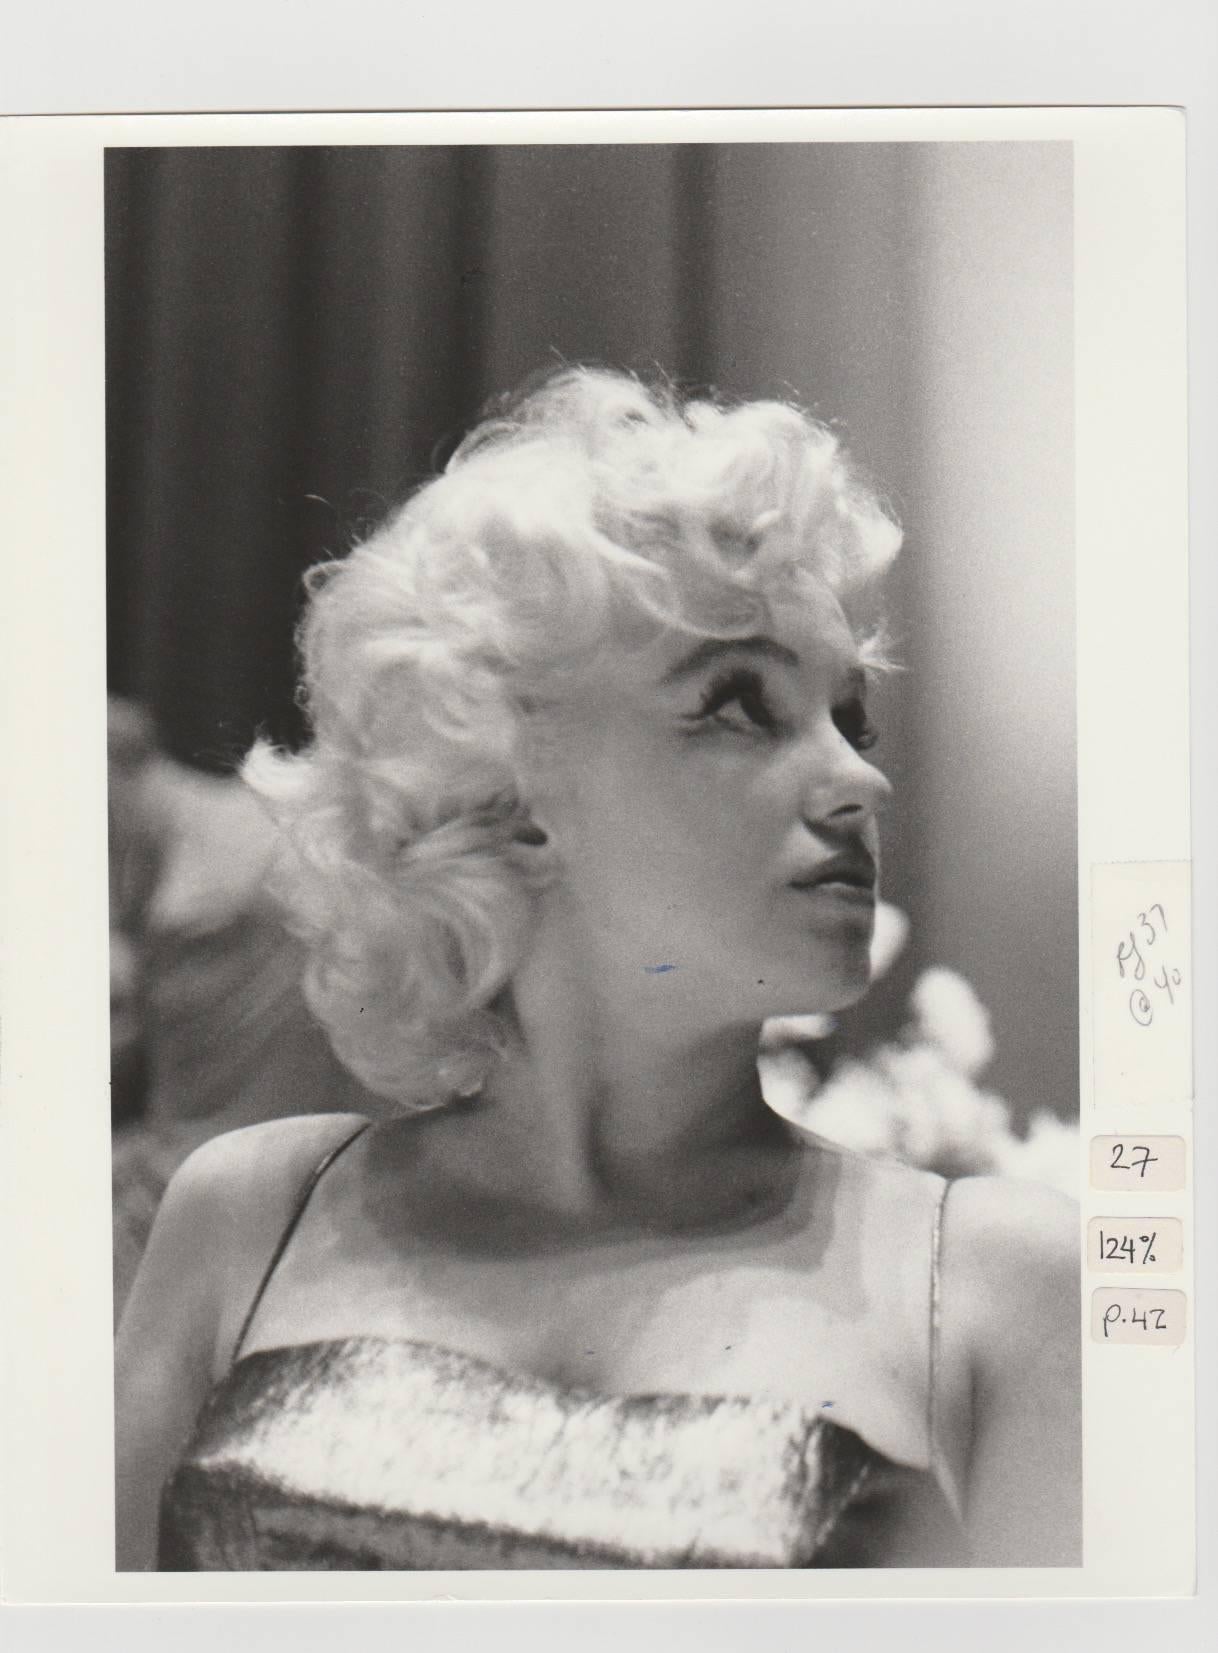 Edward Feingersh Black and White Photograph – Marilyn Monroe, Druck aus dem Jahr 1988 aus dem Originalnegativ